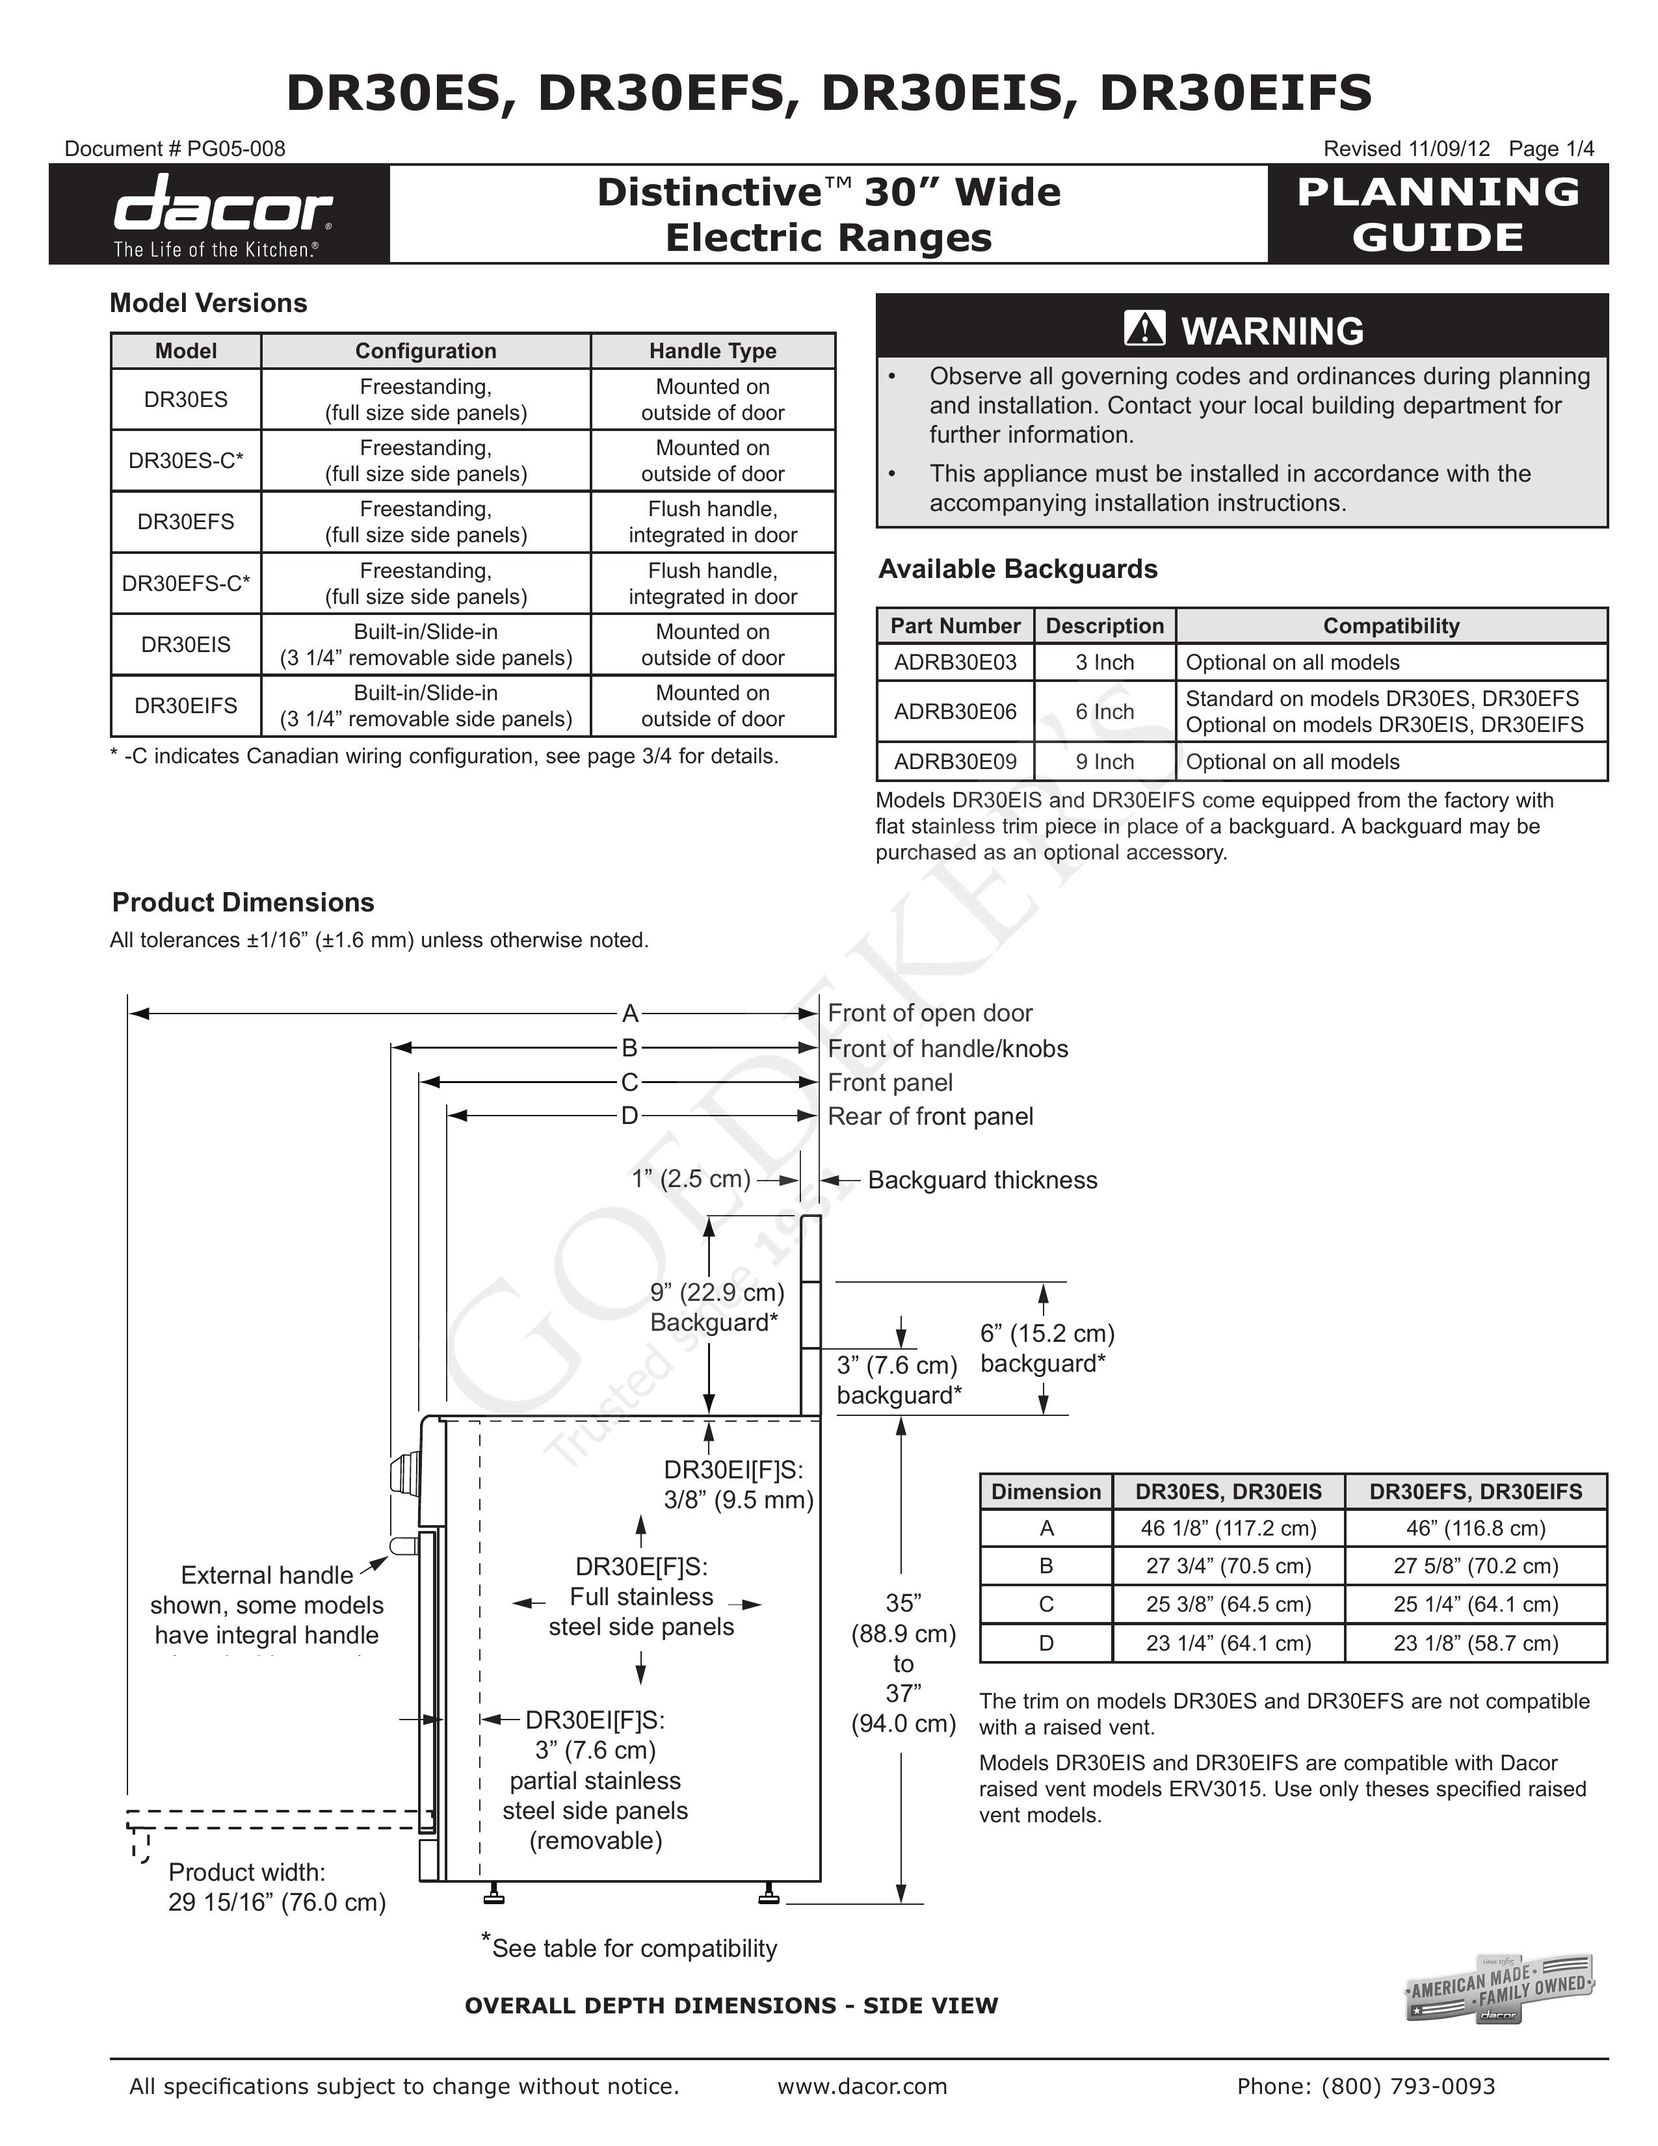 Dacor DR30EIFS Range User Manual